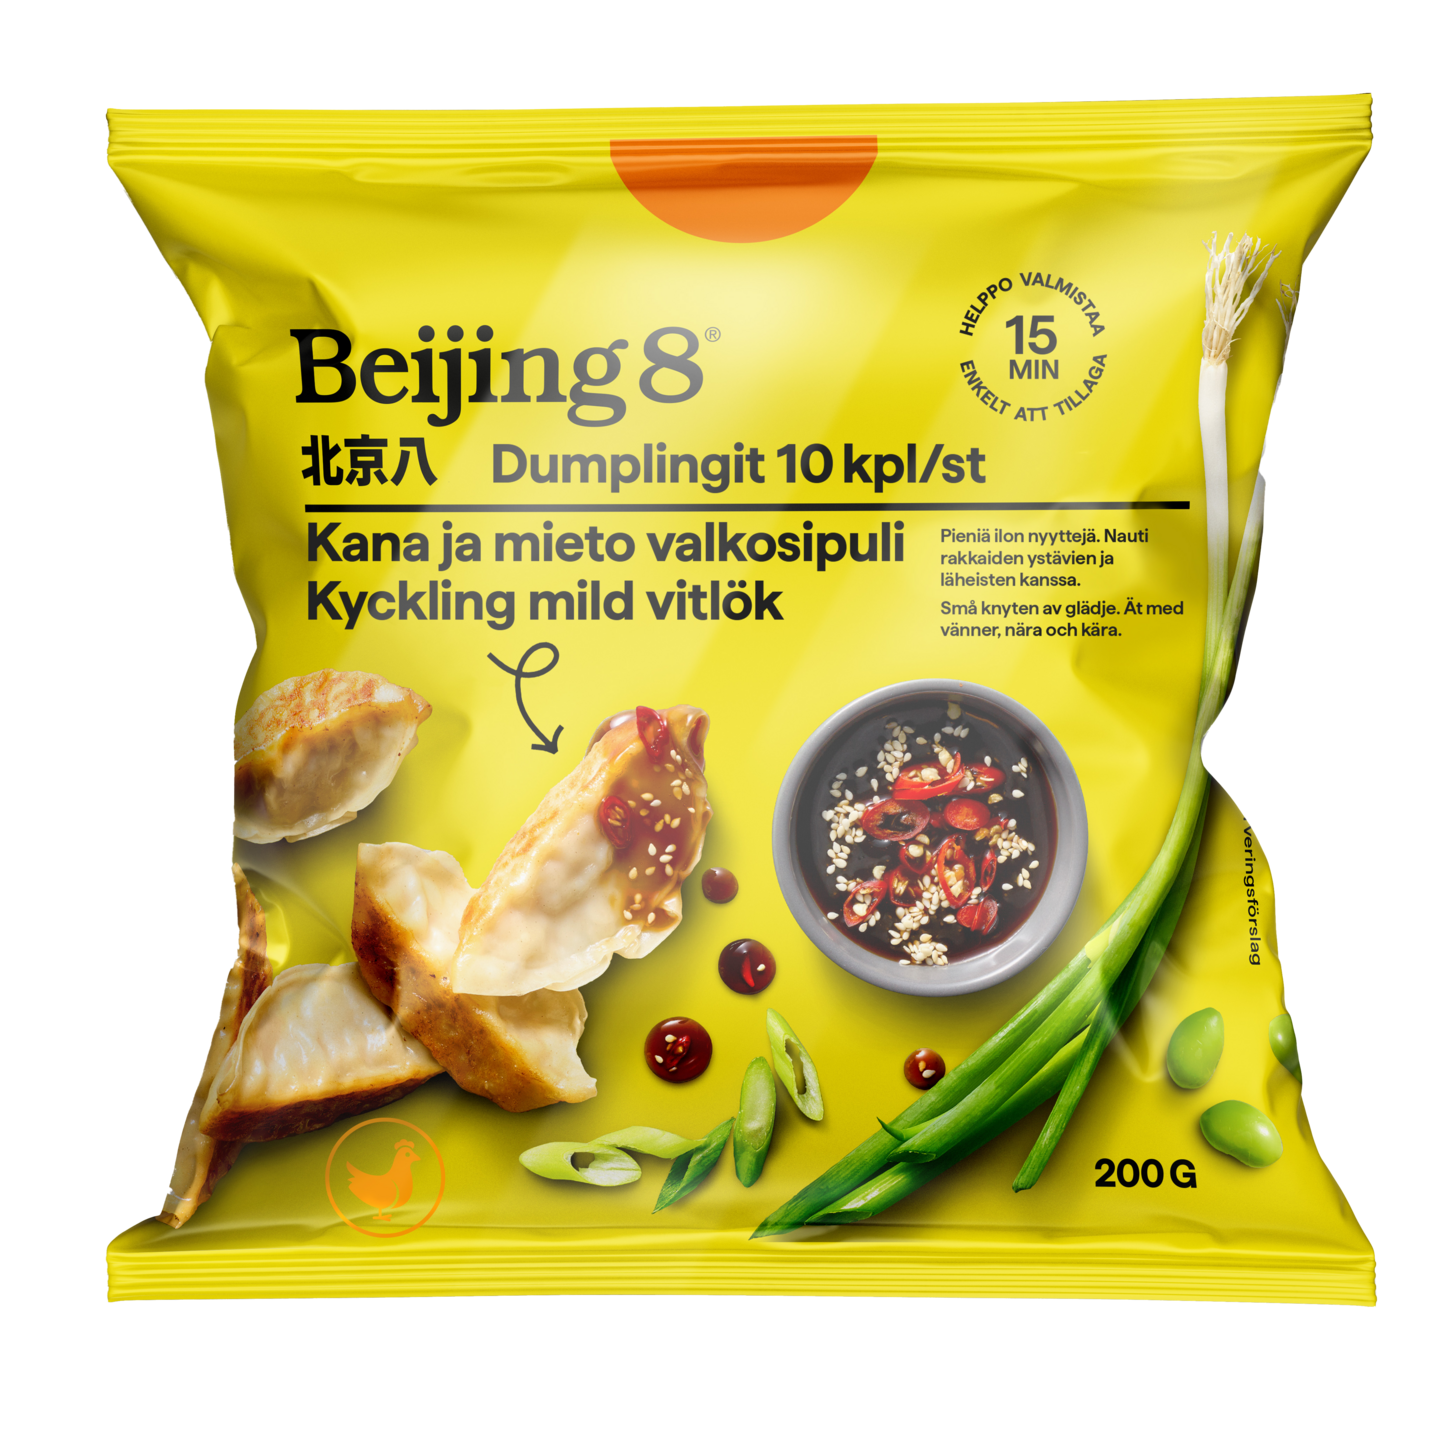 Beijing8 Dumplingit Kana ja mieto valkosipuli 200g pakaste